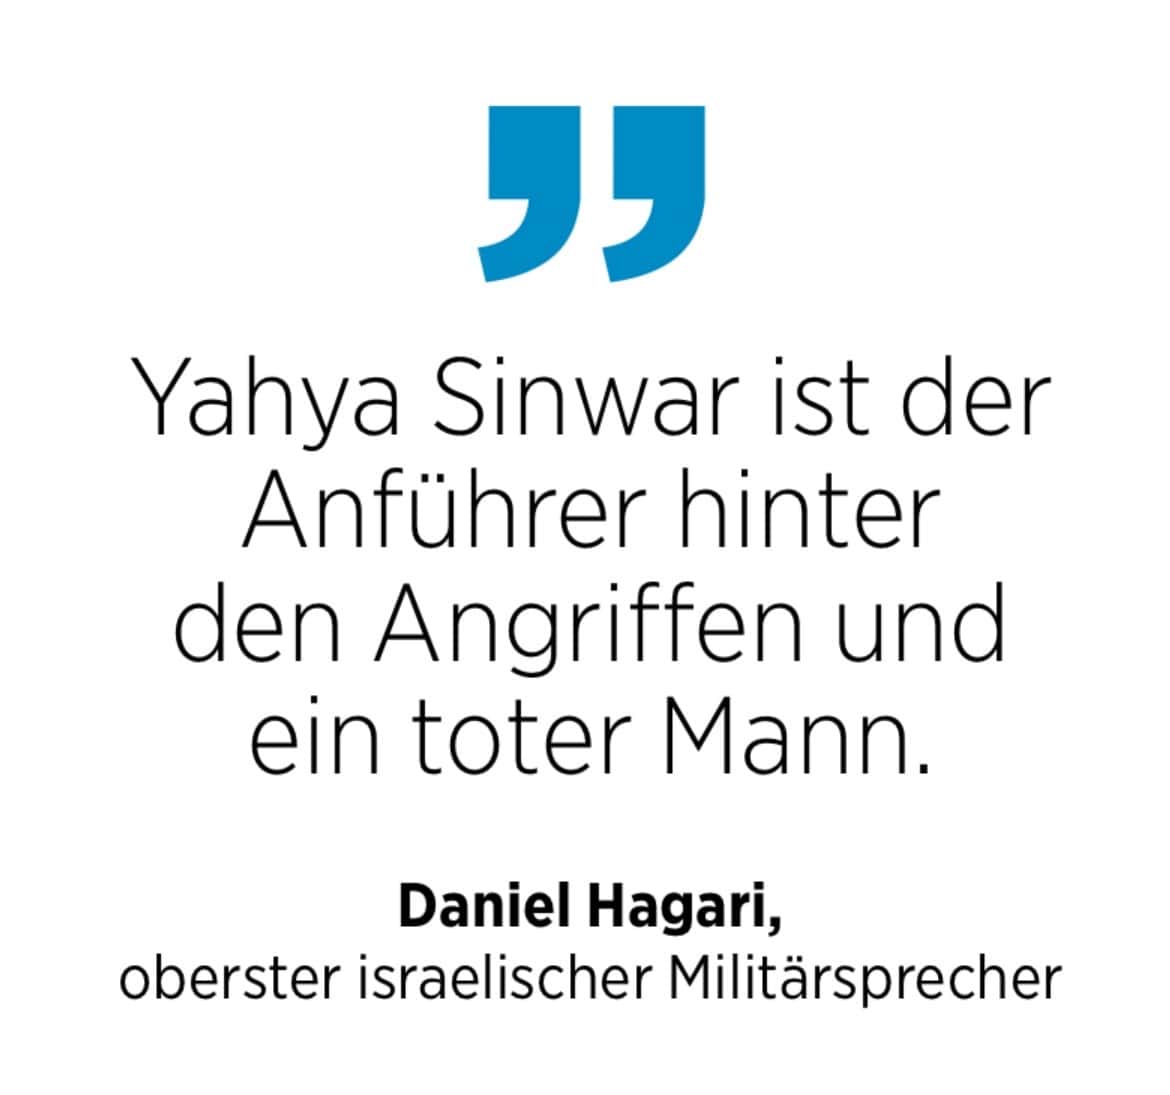 Daniel Hagari, oberster israelischer Militärsprecher: Yahya Sinwar ist der Anführer hinter den Angriffen und ein toter Mann.